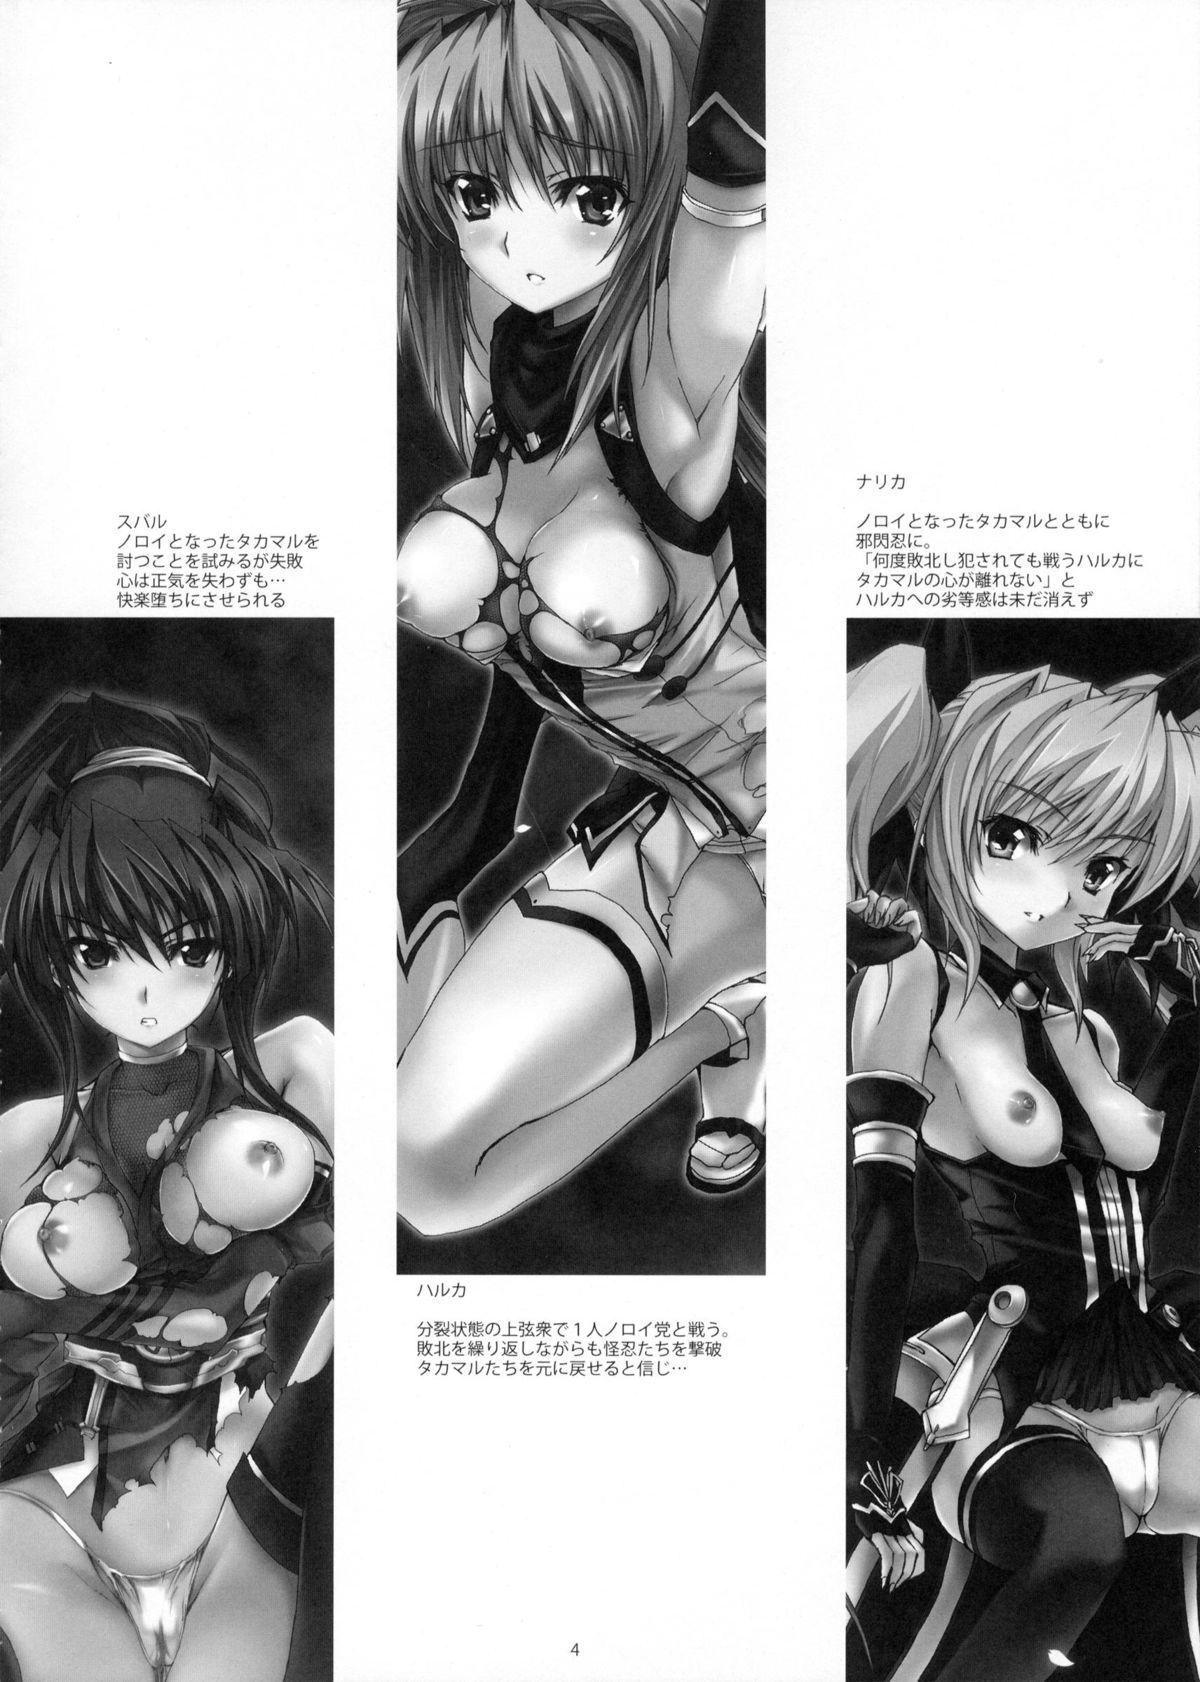 Climax Yami wo Matoishi Homura wa Ono ga Mi wo Boukyaku no Gokuen e - Beat blades haruka Women Fucking - Page 3